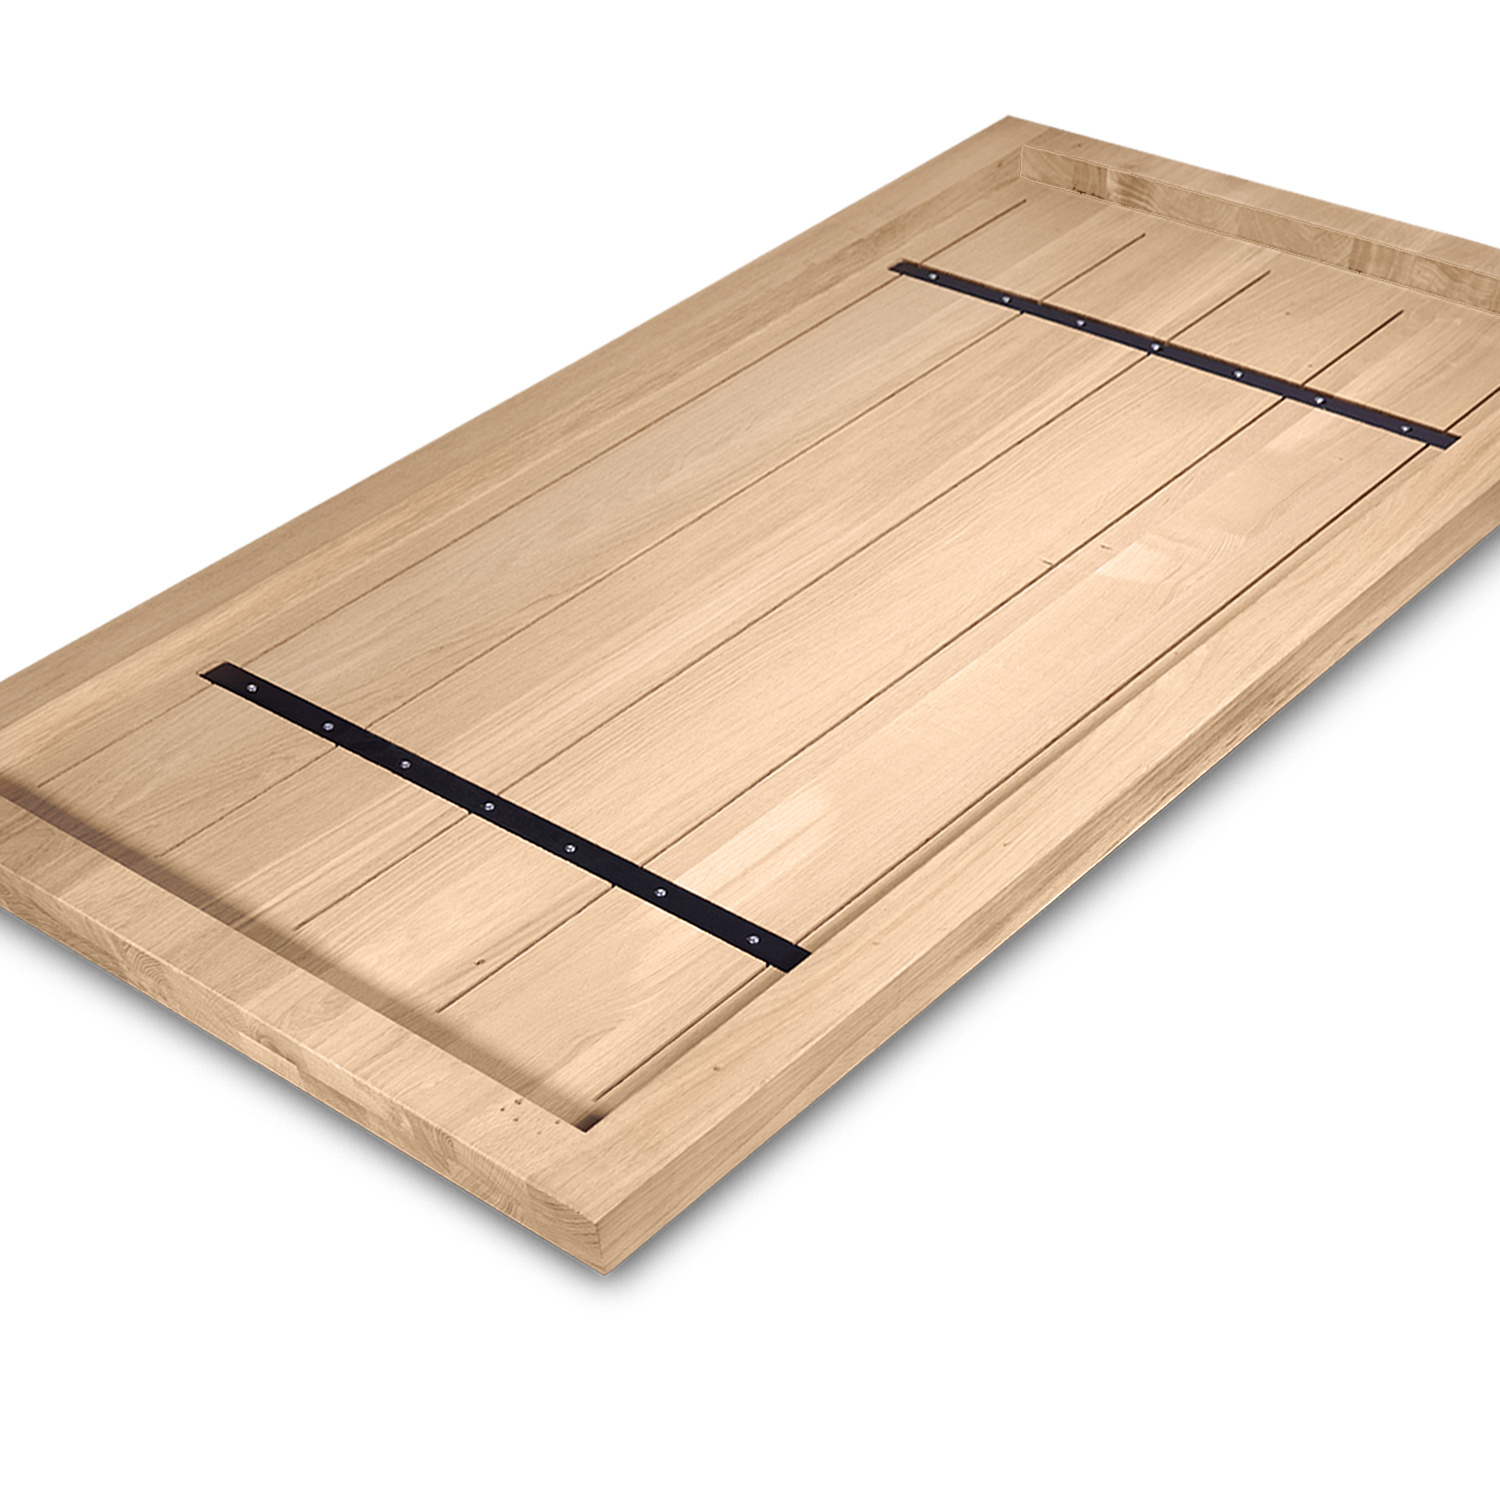  Tischplatte Eiche nach Maß - Aufgedoppelt - 4 cm dick (2-lagig) - Eichenholz rustikal - Eiche Tischplatte massiv - verleimt & künstlich getrocknet (HF 8-12%) - 50-120x50-350 cm